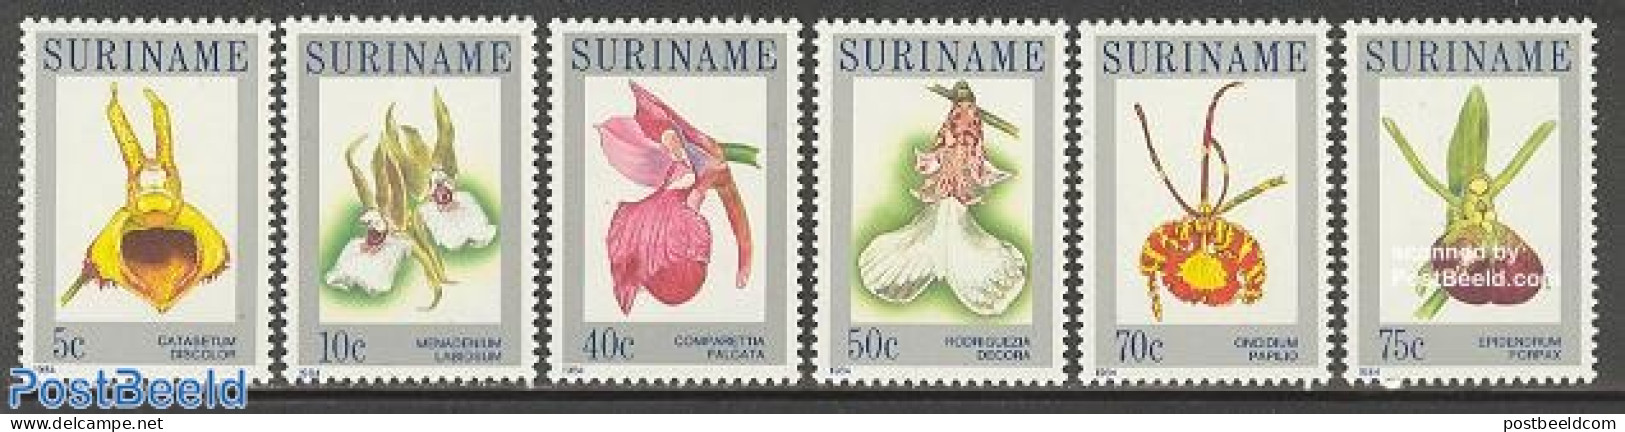 Suriname, Republic 1984 Orchids 6v, Mint NH, Nature - Flowers & Plants - Orchids - Surinam